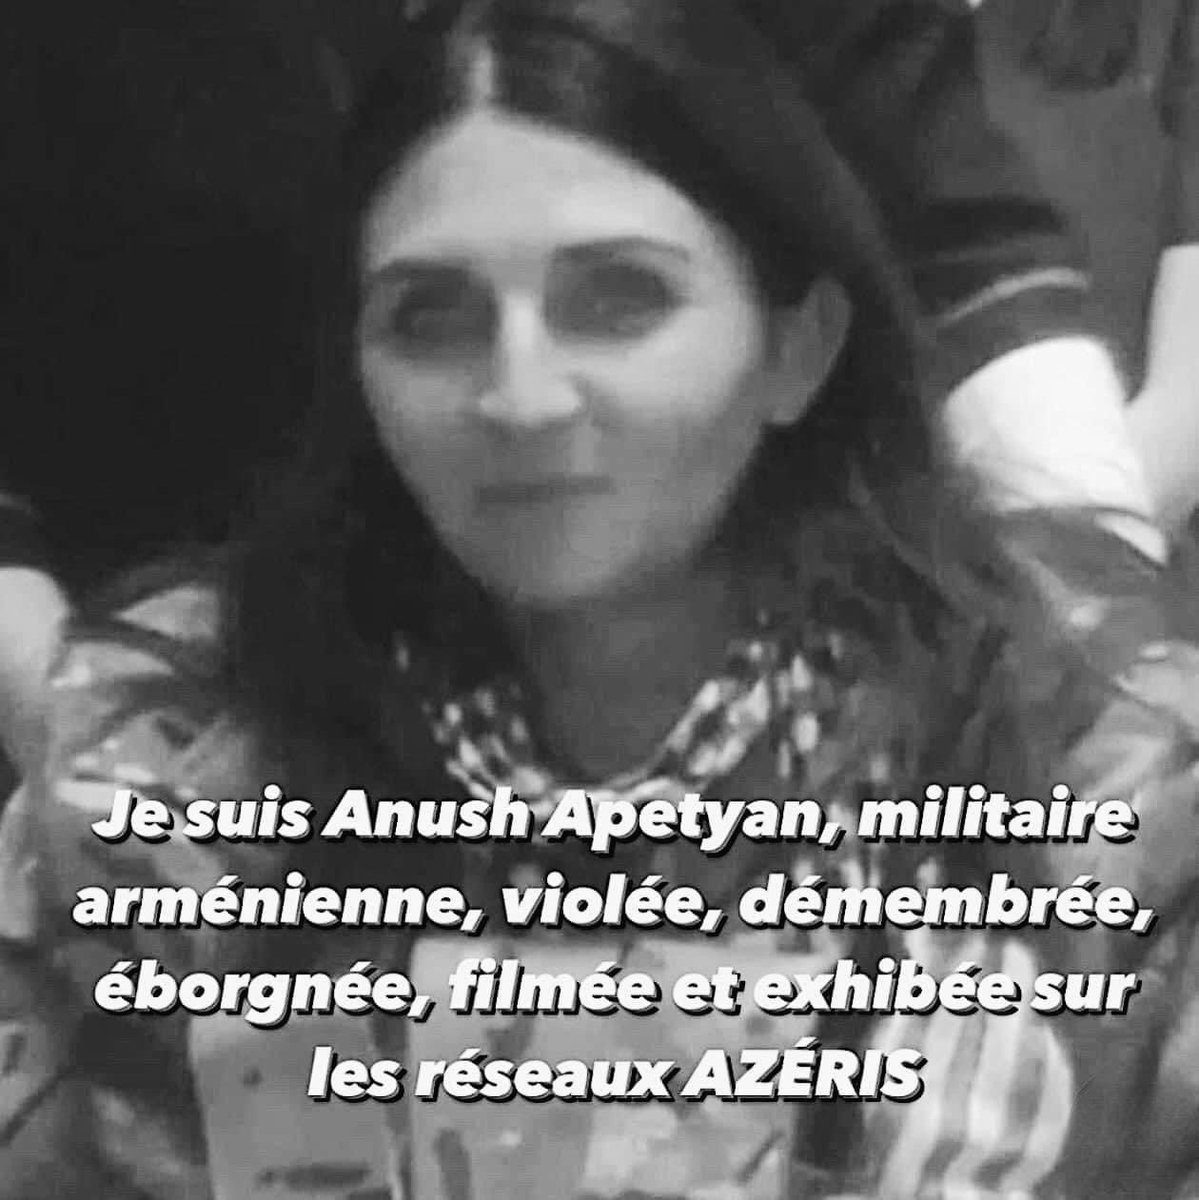 Tous les jours je posterai ta photo #AnushApetyan pour honorer ta mémoire et ton #combat face au #panturquisme.
« Rester neutre face à l'injustice, c'est choisir le camp de l'oppresseur » (Desmond TUTU.)
#Arménien
#ArmenianGenocide2023 
#Armenian 
#WomensRightsAreHumanRights